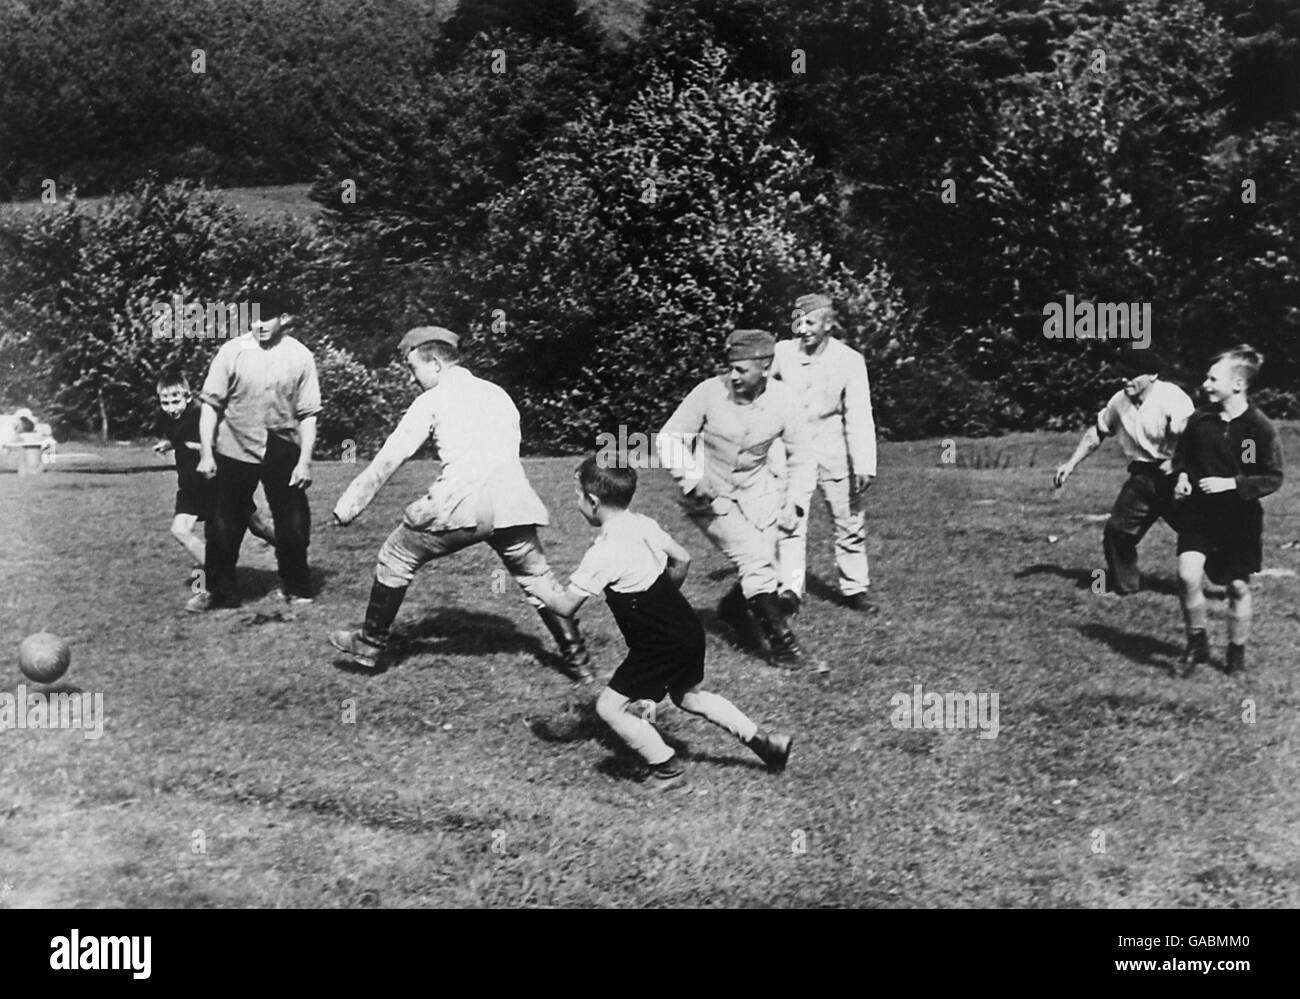 Football.Des soldats dans un camp communautaire du corps travailliste occidental en Tchécoslovaquie jouent au football contre des garçons du village local pendant la crise tchèque Banque D'Images